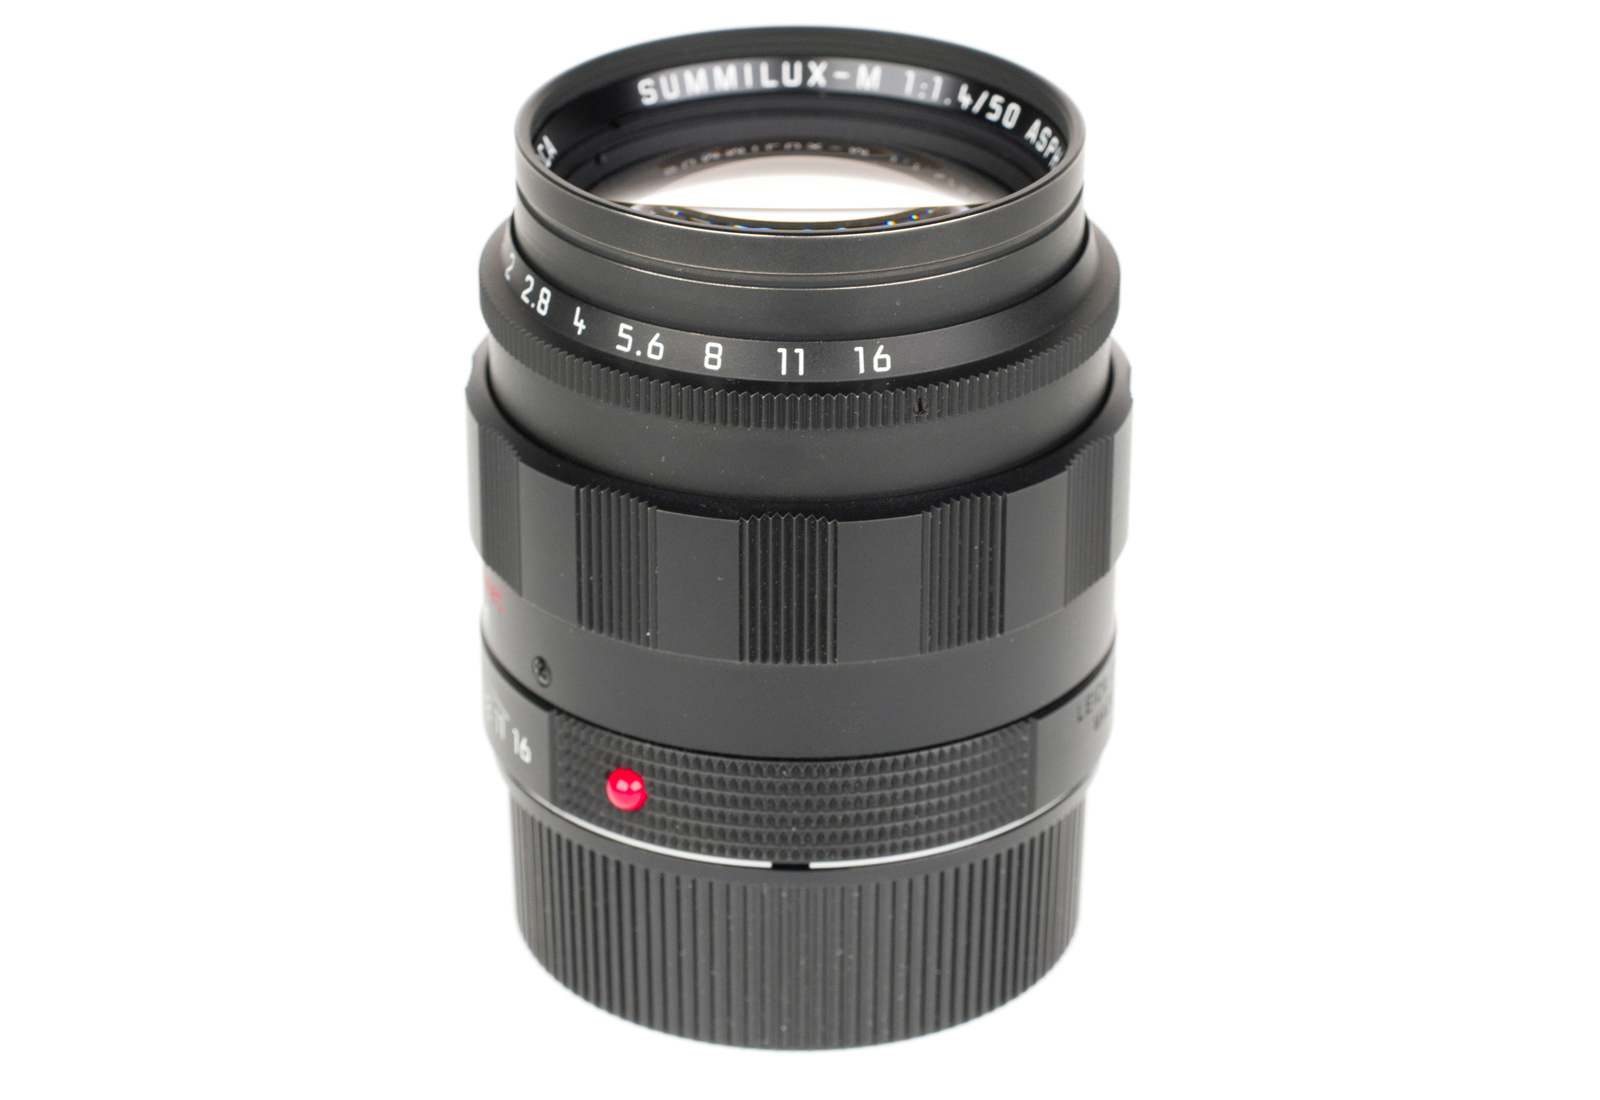 Leica Summilux-M 1:1,4/50mm ASPH., black chrome 11688